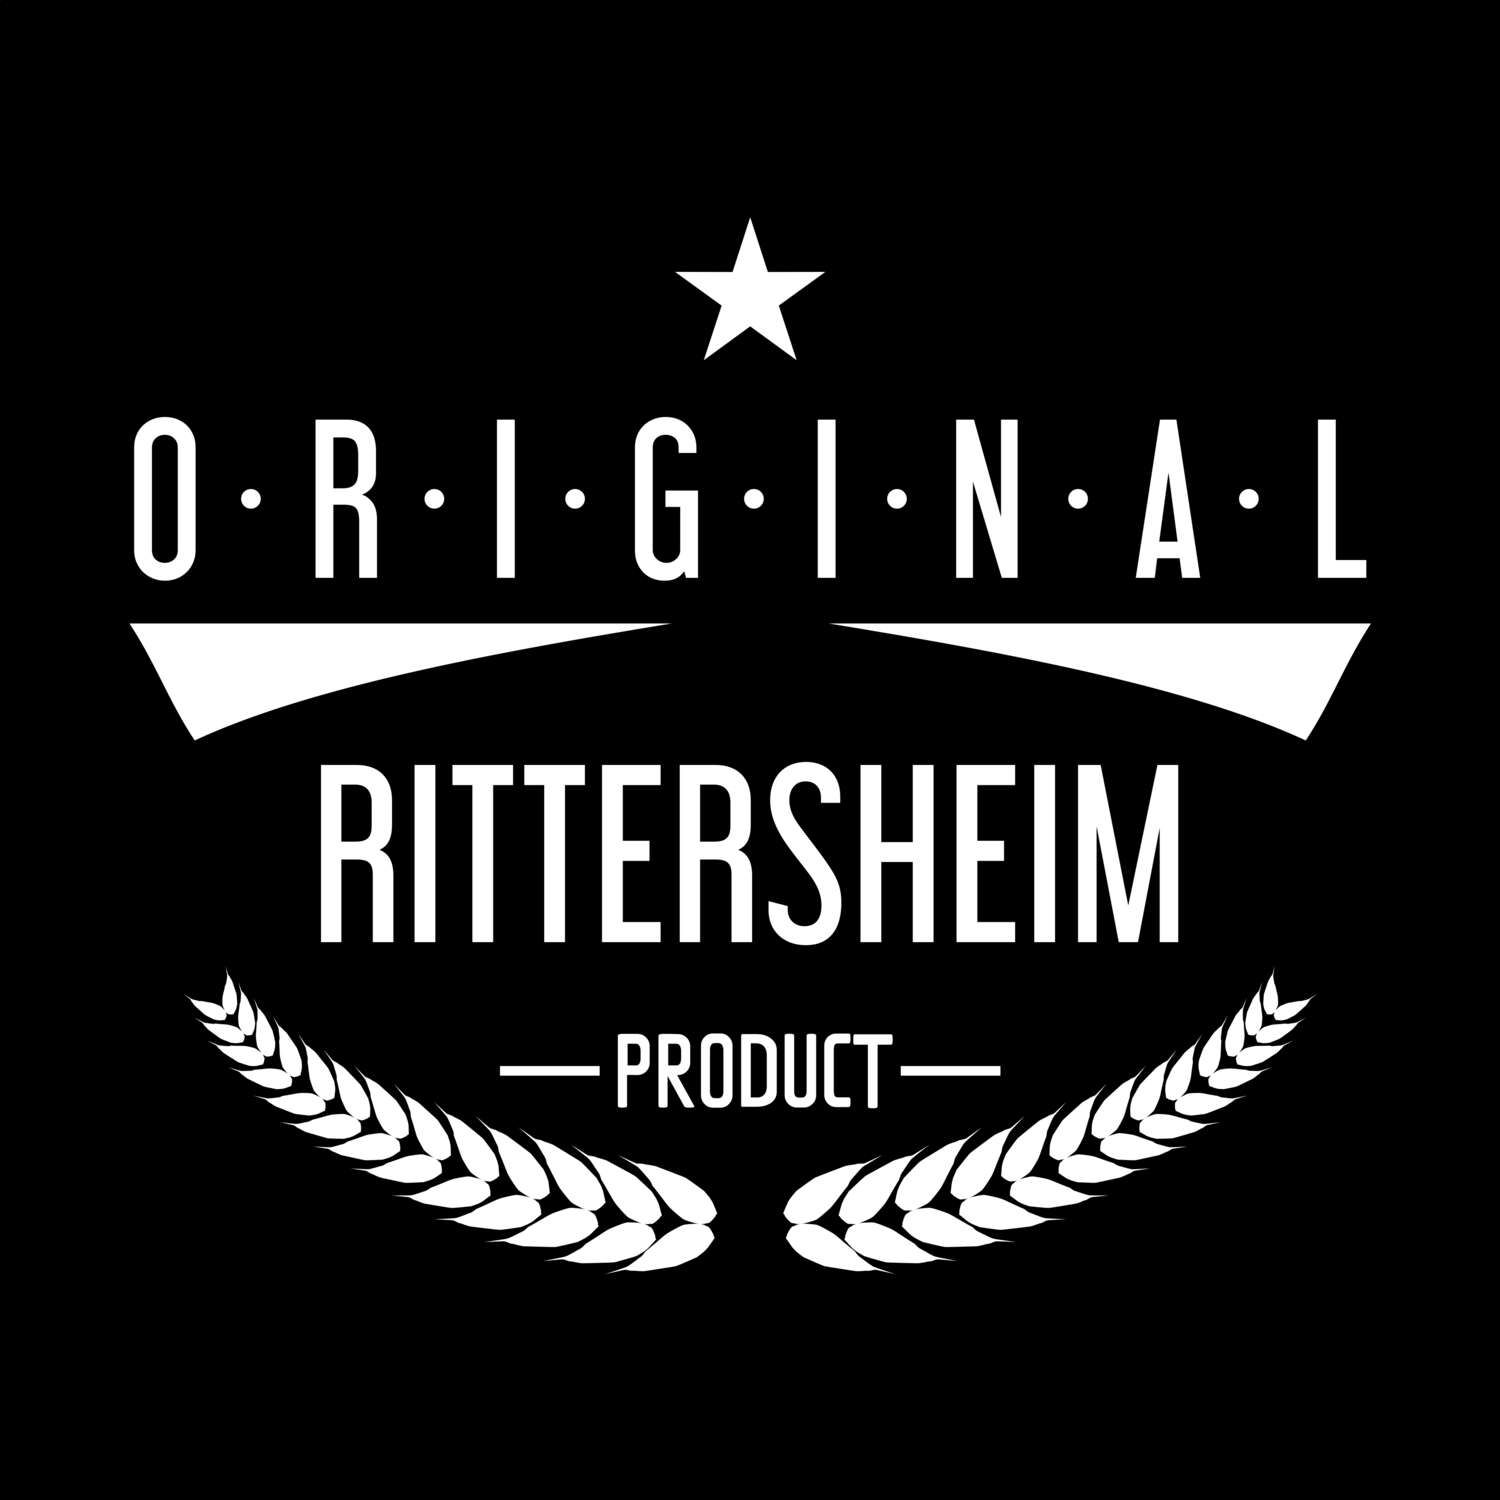 Rittersheim T-Shirt »Original Product«